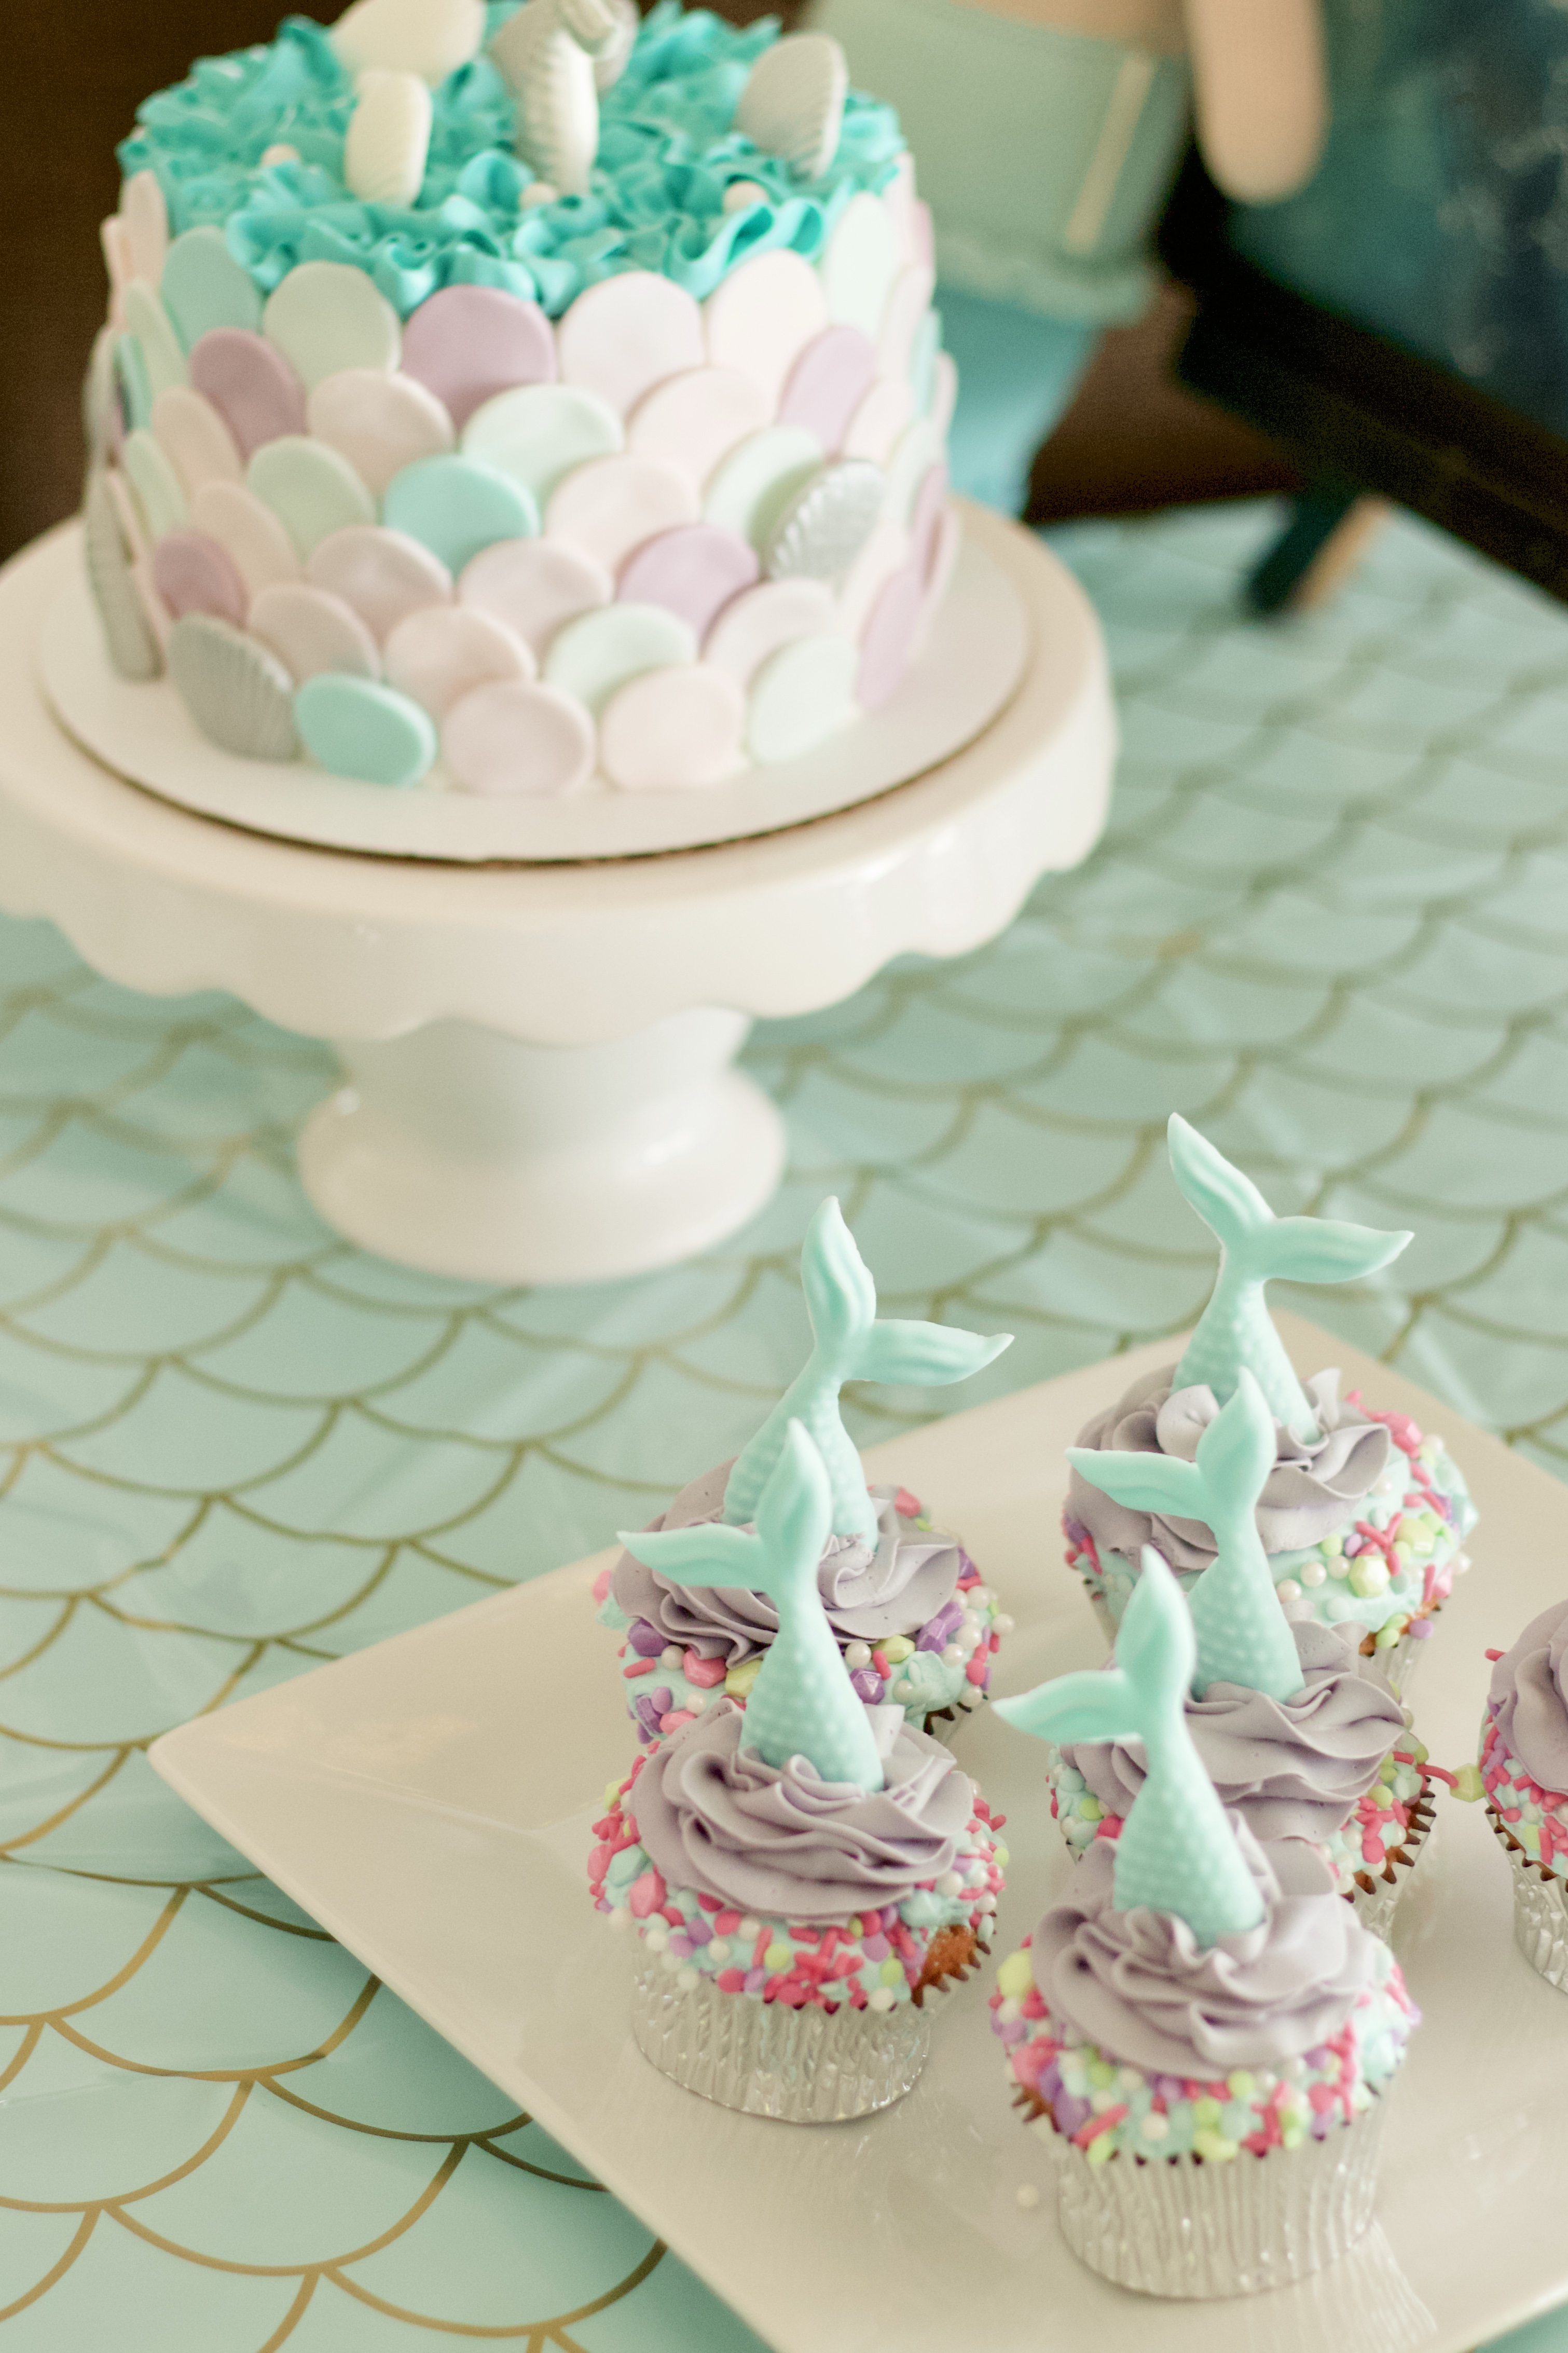 mermaid birthday cake and cupcakes #birthdaycake #mermaidcake #mermaidparty #cake